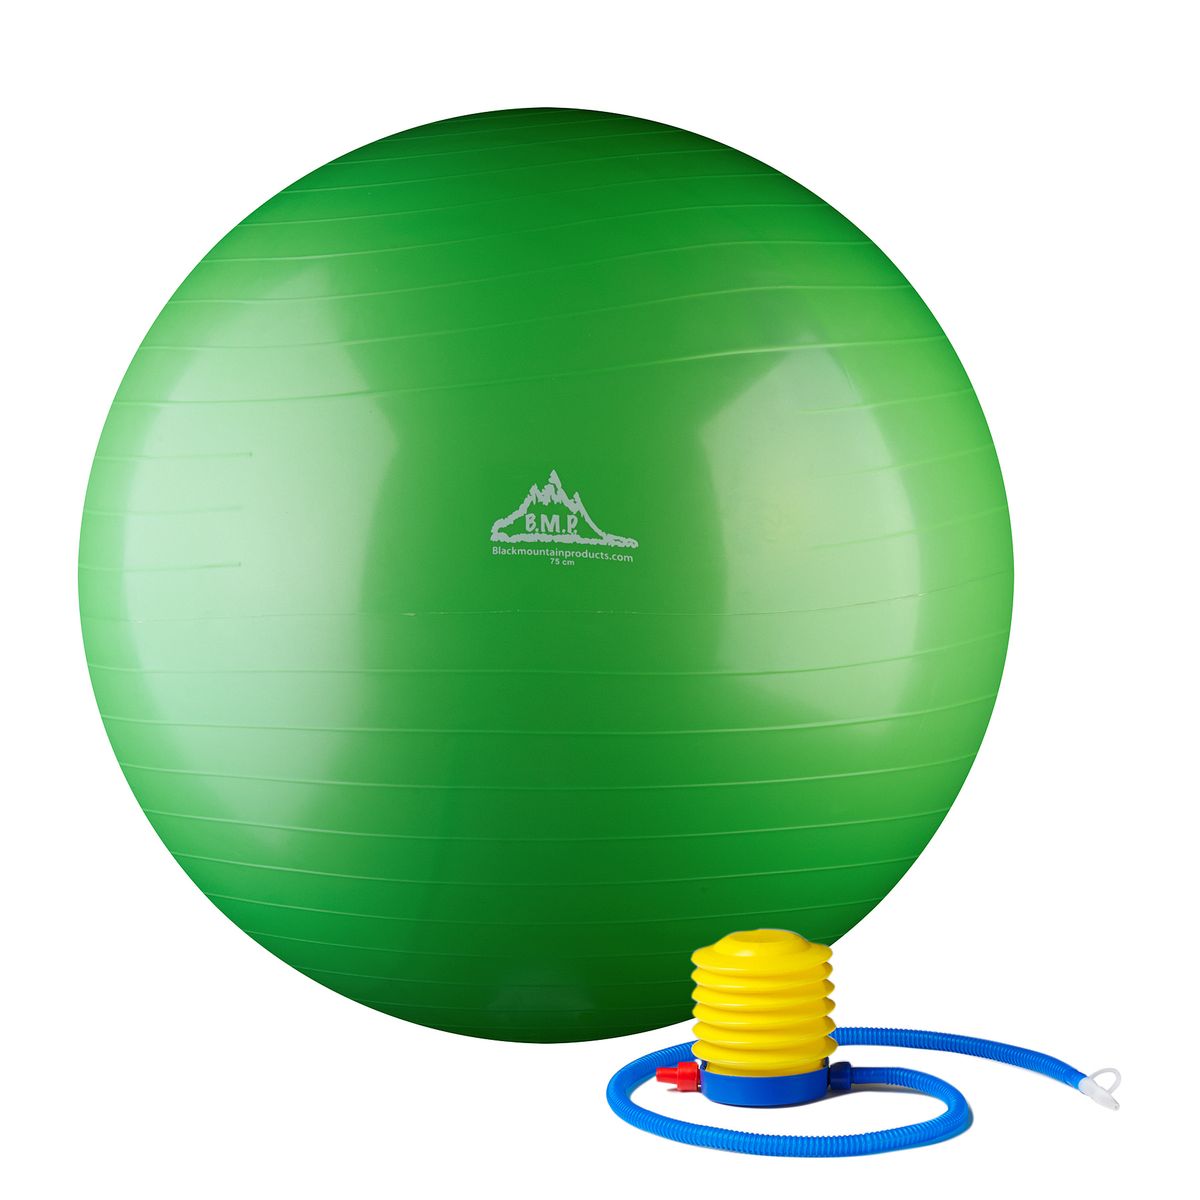 代引不可 送料無料 Black Mountain Products ポンプ 75cm の緑が付いている 00lbs 静的な強さの練習の安定性の球 楽天海外通販 Static Strength Exercise Stability Ball With Pump Green